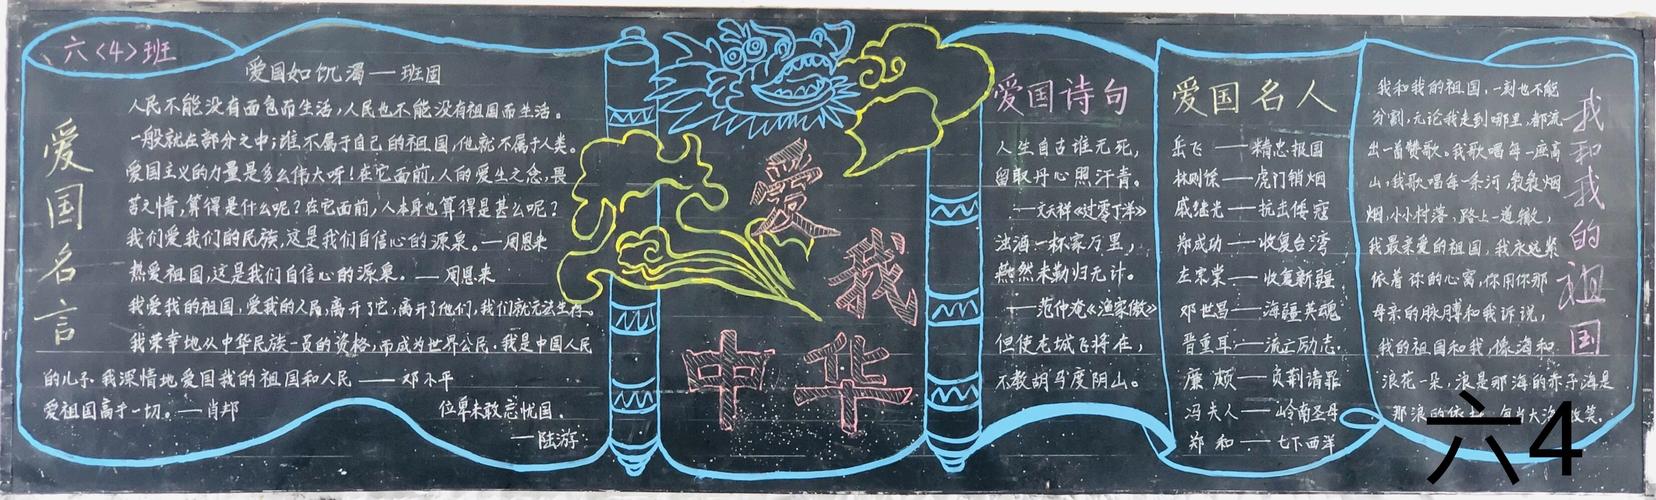 黑板报作品展示 写美篇  国庆将至为庆祝建国70周年弘扬民族文化